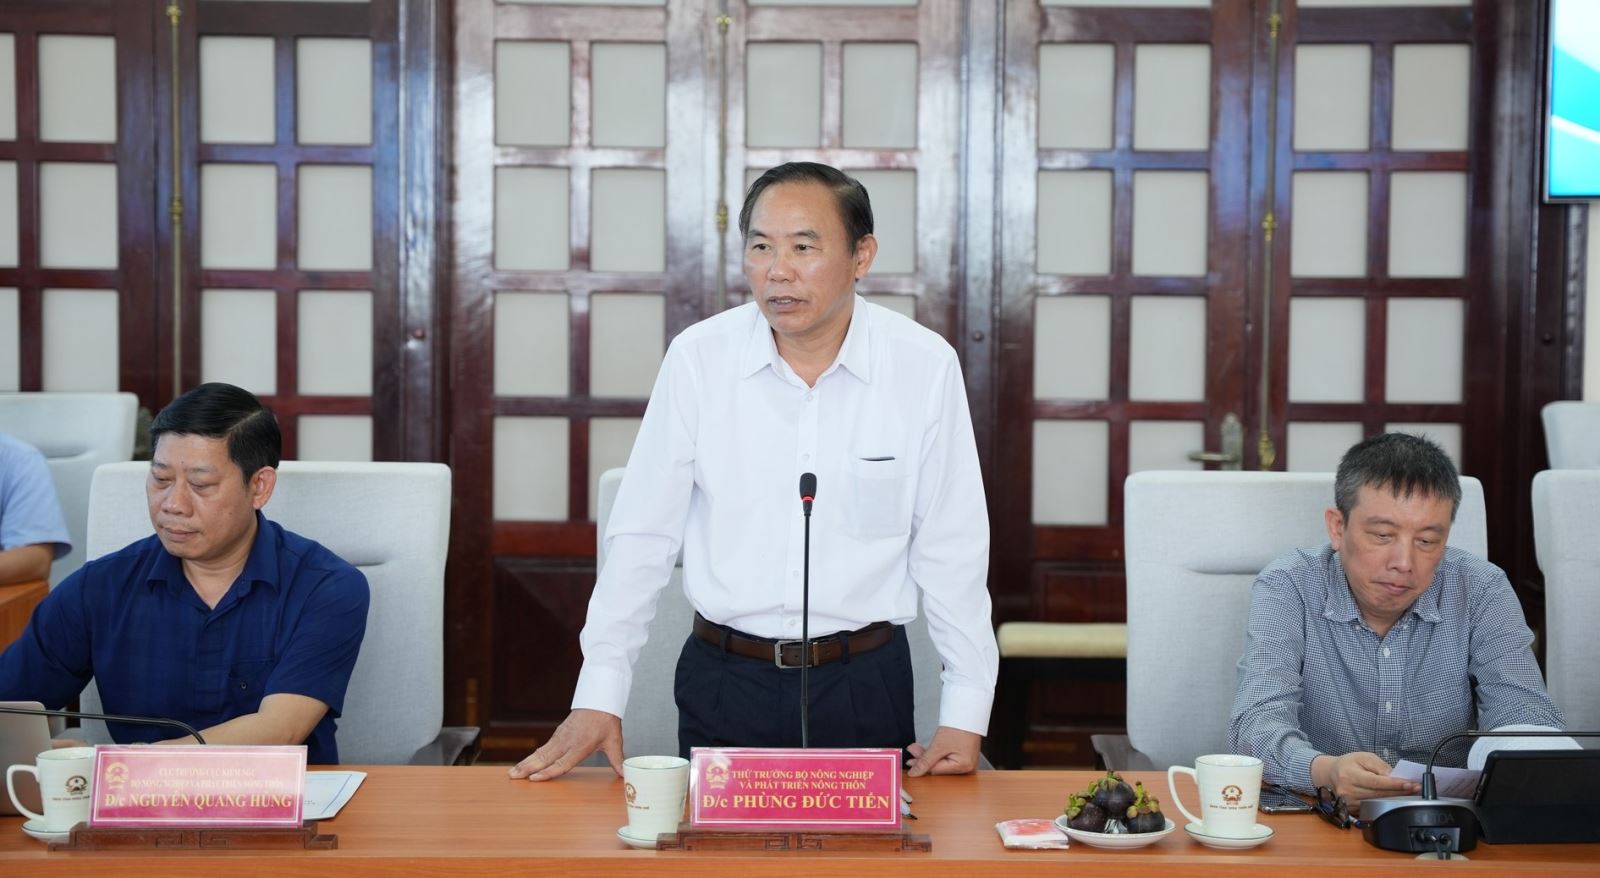 Thứ trưởng Bộ NN-PTNT Phùng Đức Tiến đề nghị tỉnh Thừa Thiên- Huế cần phải triển khai quyết liệt và đồng bộ hơn nữa các giải pháp để đáp ứng yêu cầu, khắc phục những khuyến nghị của EC.